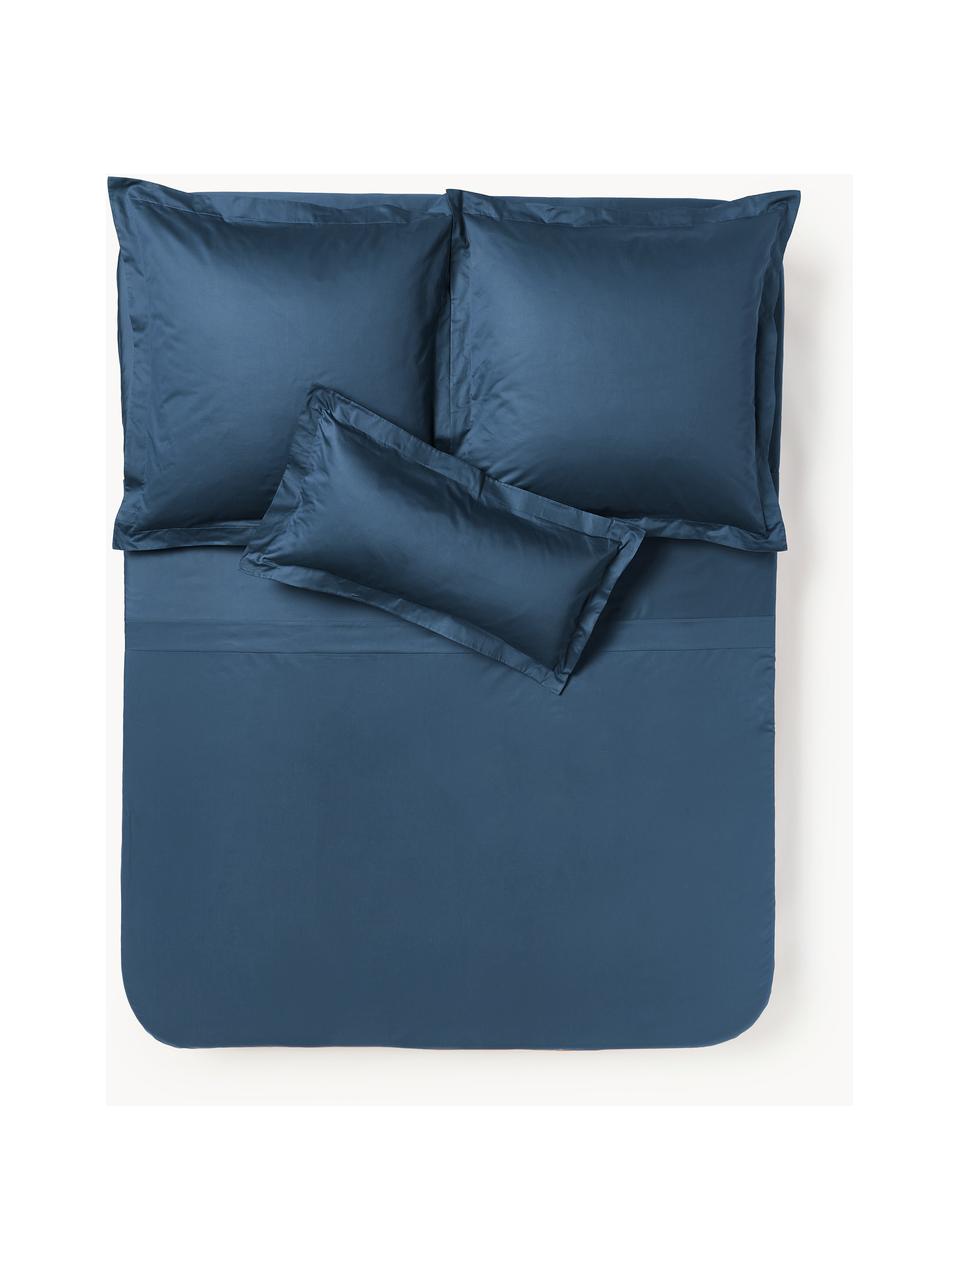 Drap plat en satin de coton Premium, Bleu foncé, larg. 240 x long. 280 cm